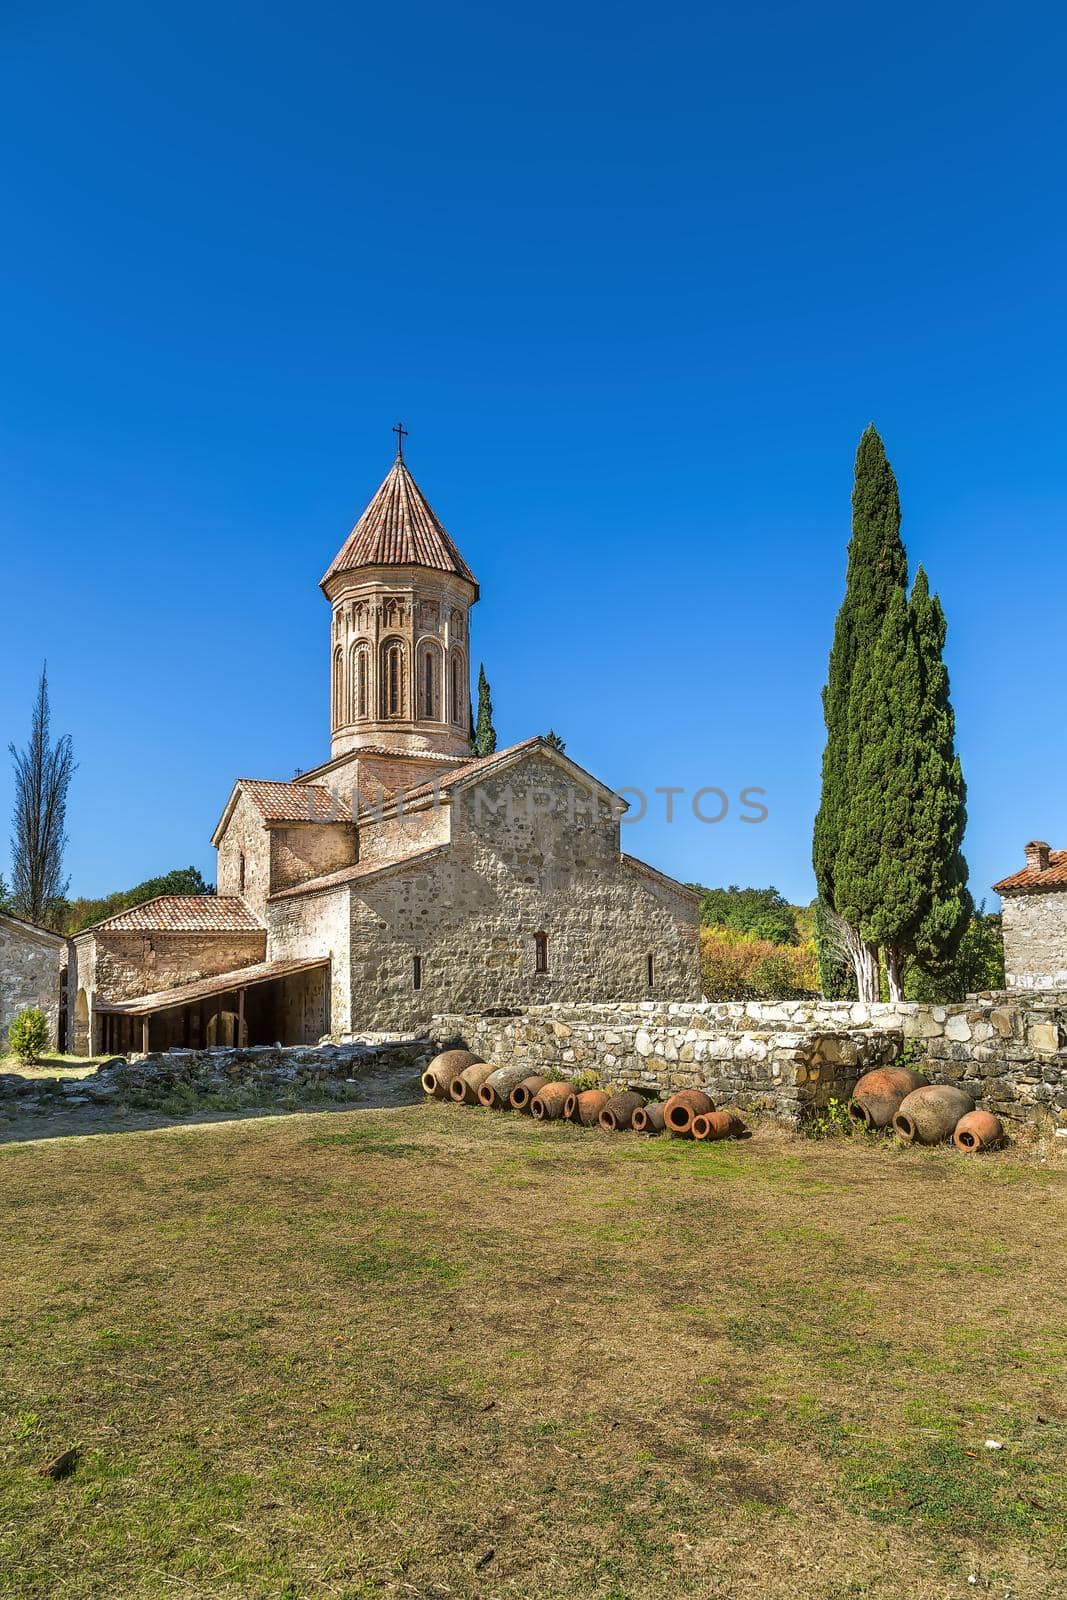 Ikalto monastery, Kakheti, Georgia by borisb17